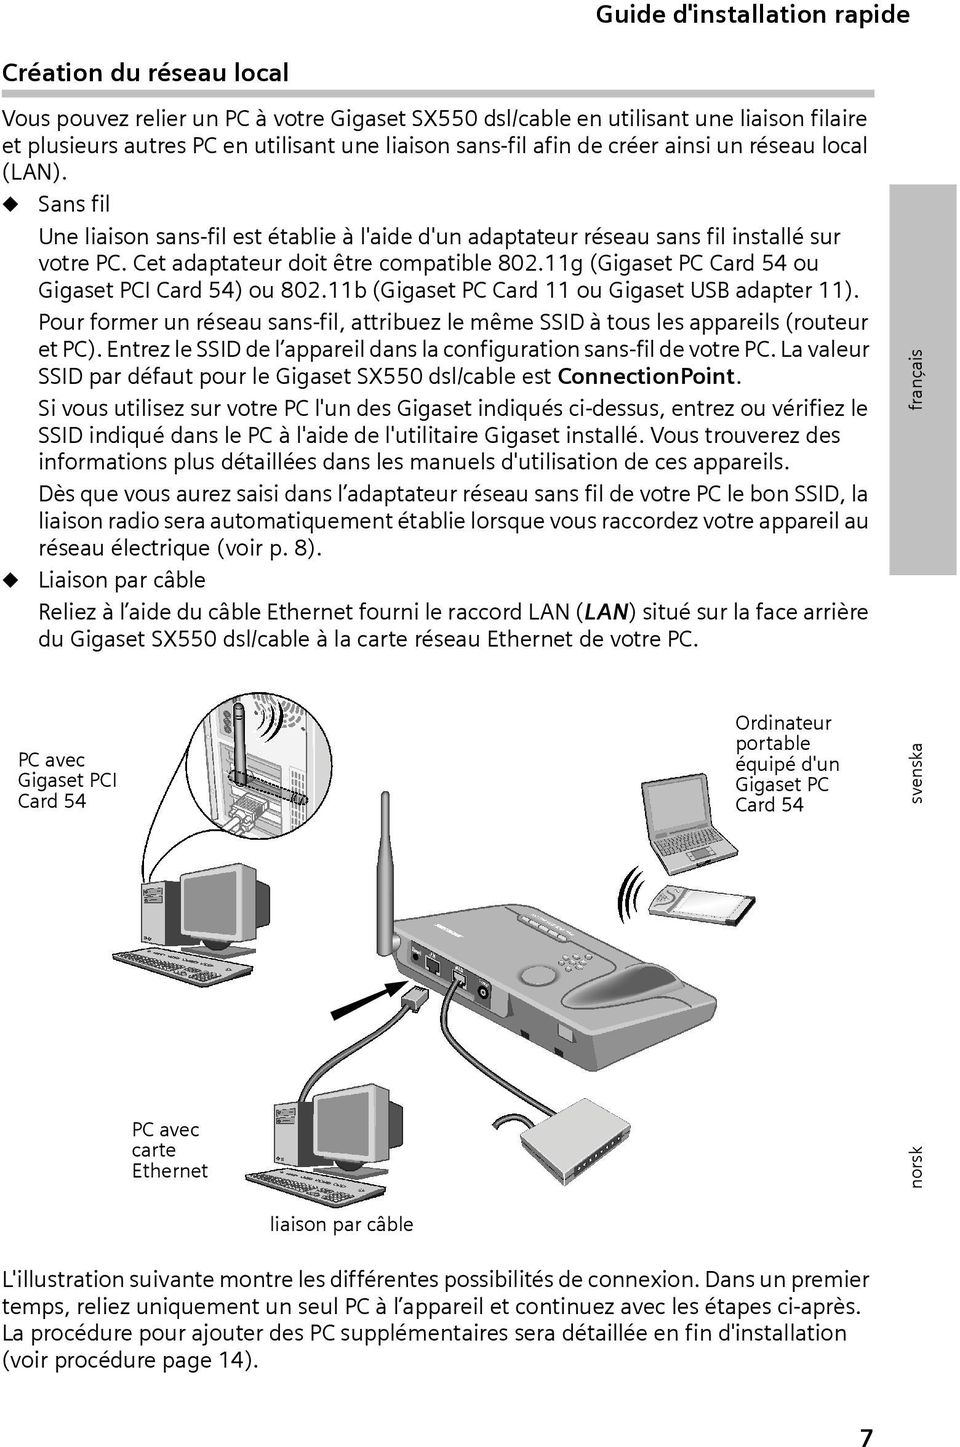 11g (Gigaset PC Card 54 ou Gigaset PCI Card 54) ou 802.11b (Gigaset PC Card 11 ou Gigaset USB adapter 11). Pour former un réseau sans-fil, attribuez le même SSID à tous les appareils (routeur et PC).